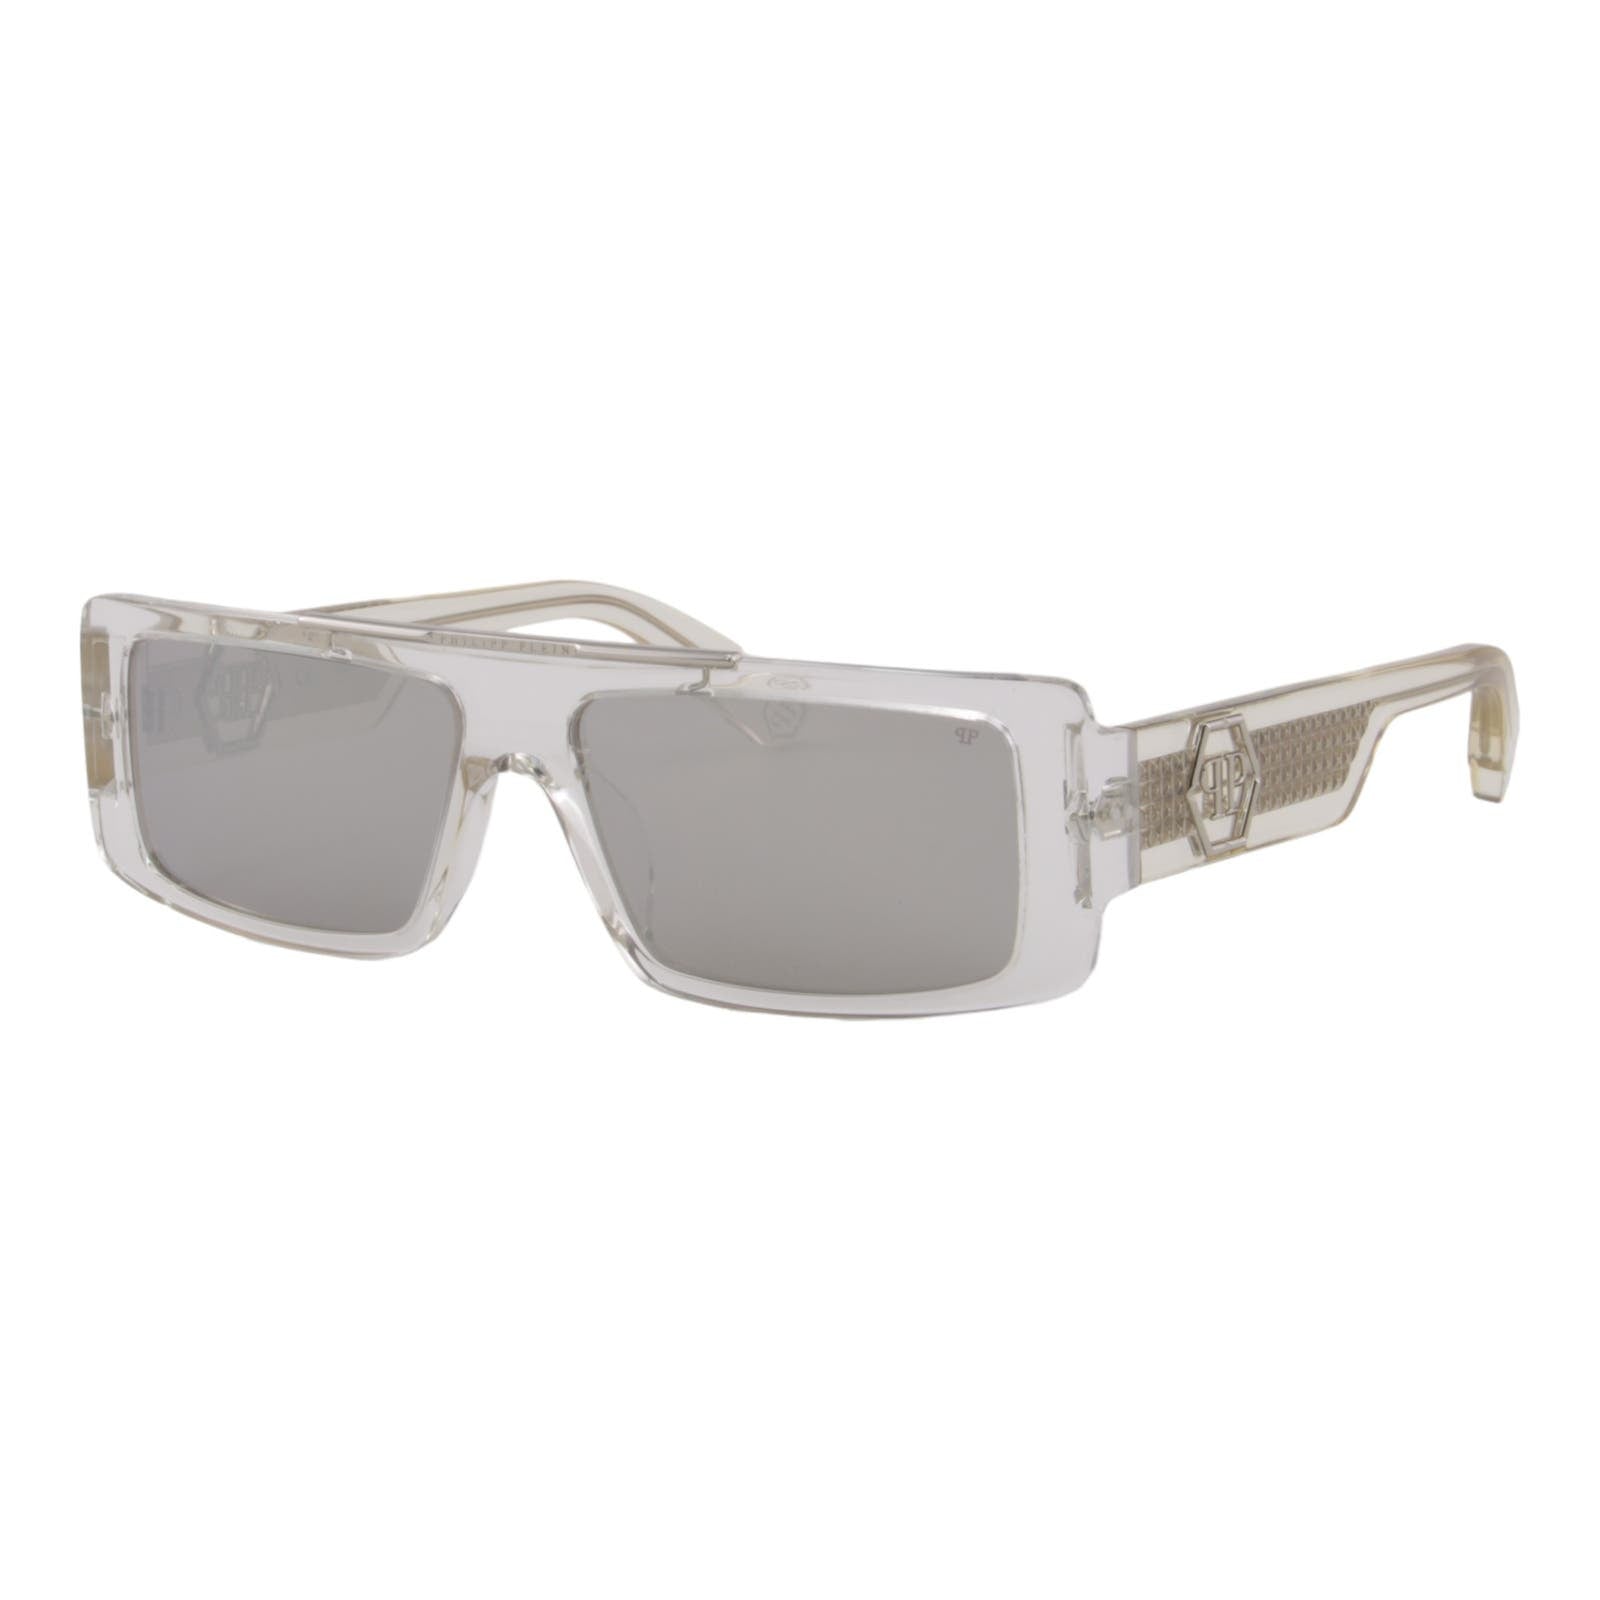 Men Slim Rectangular Sunglasses SPP003V-880X Mirrored Lens